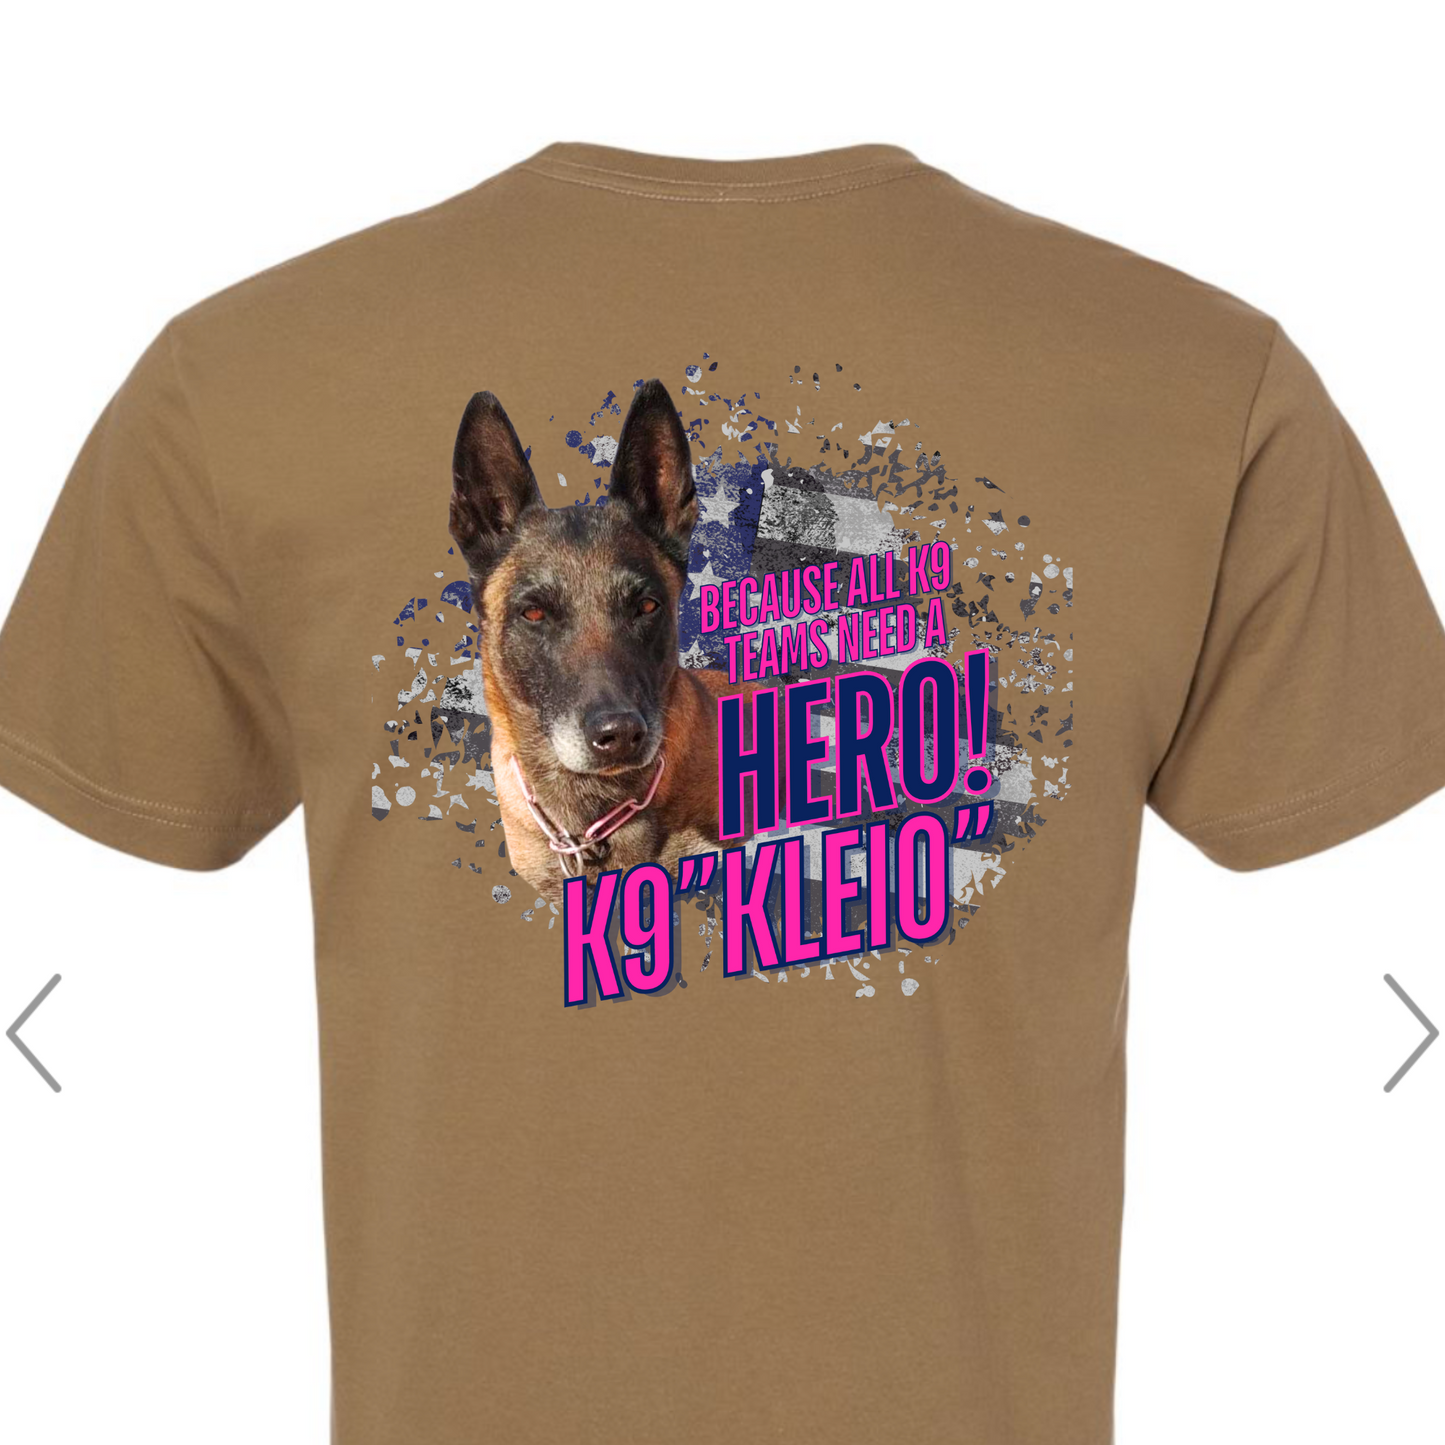 K9 "Kleio" Hero T-Shirt